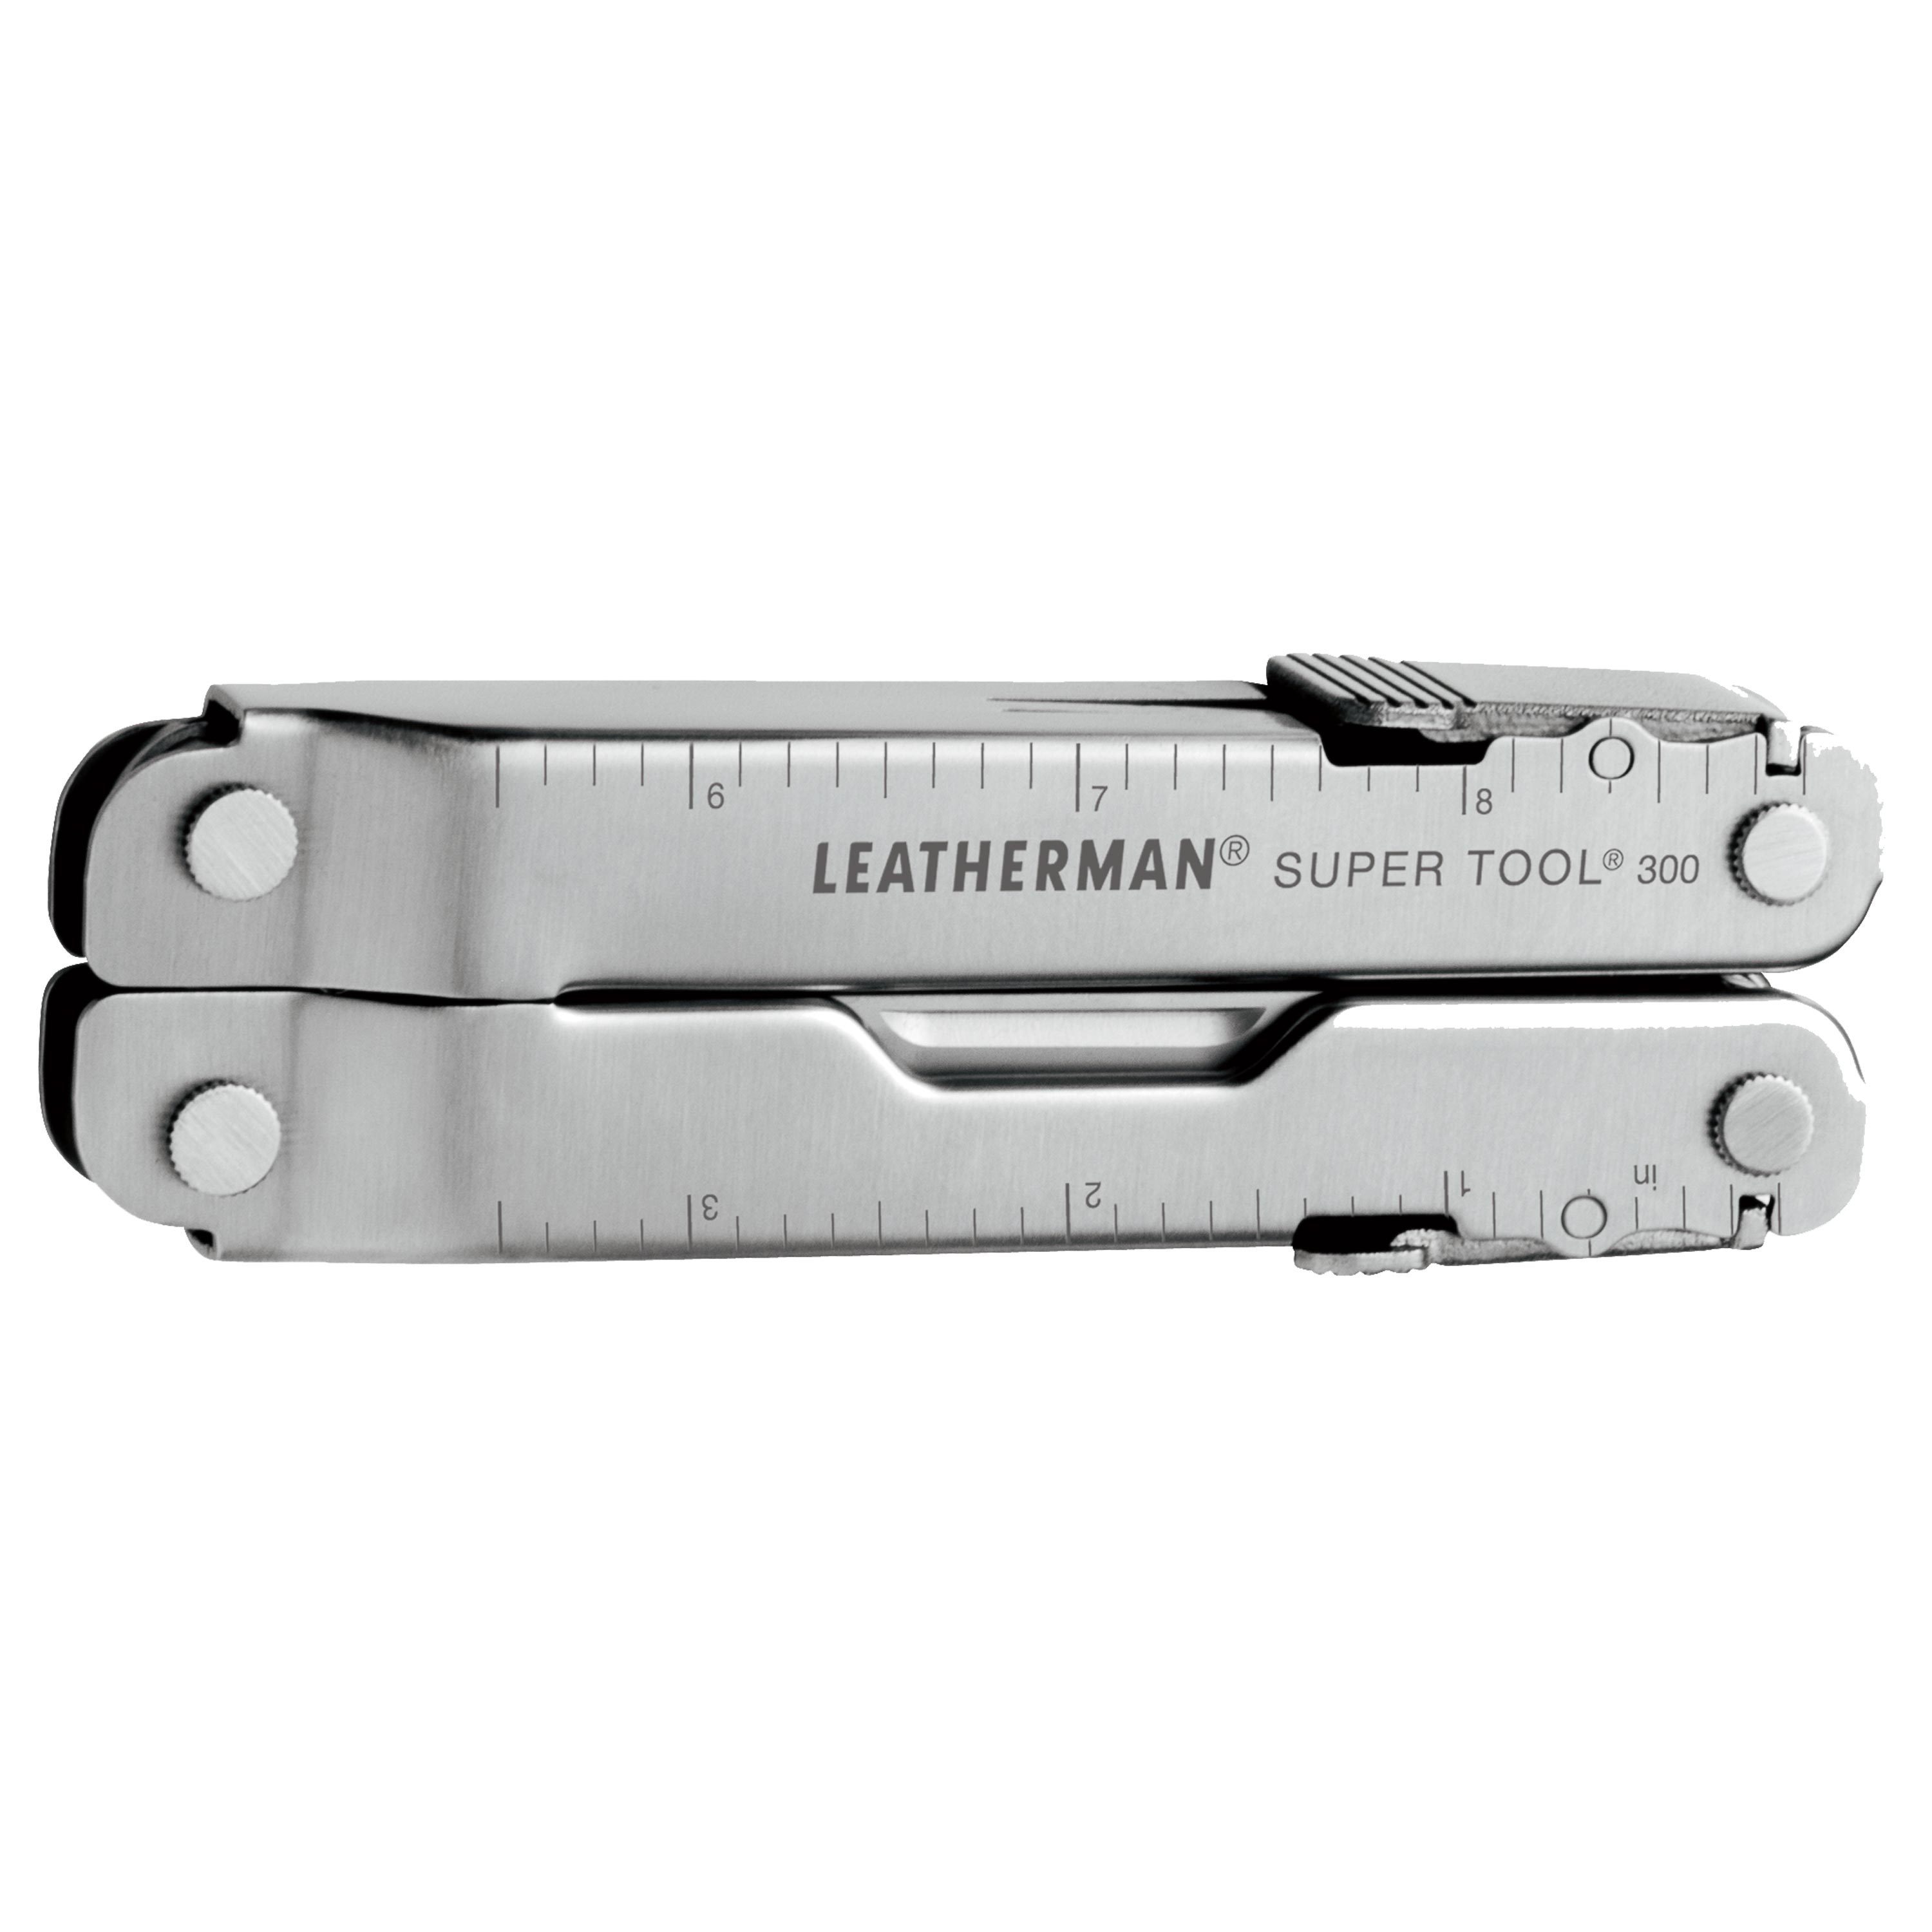 Leatherman tool